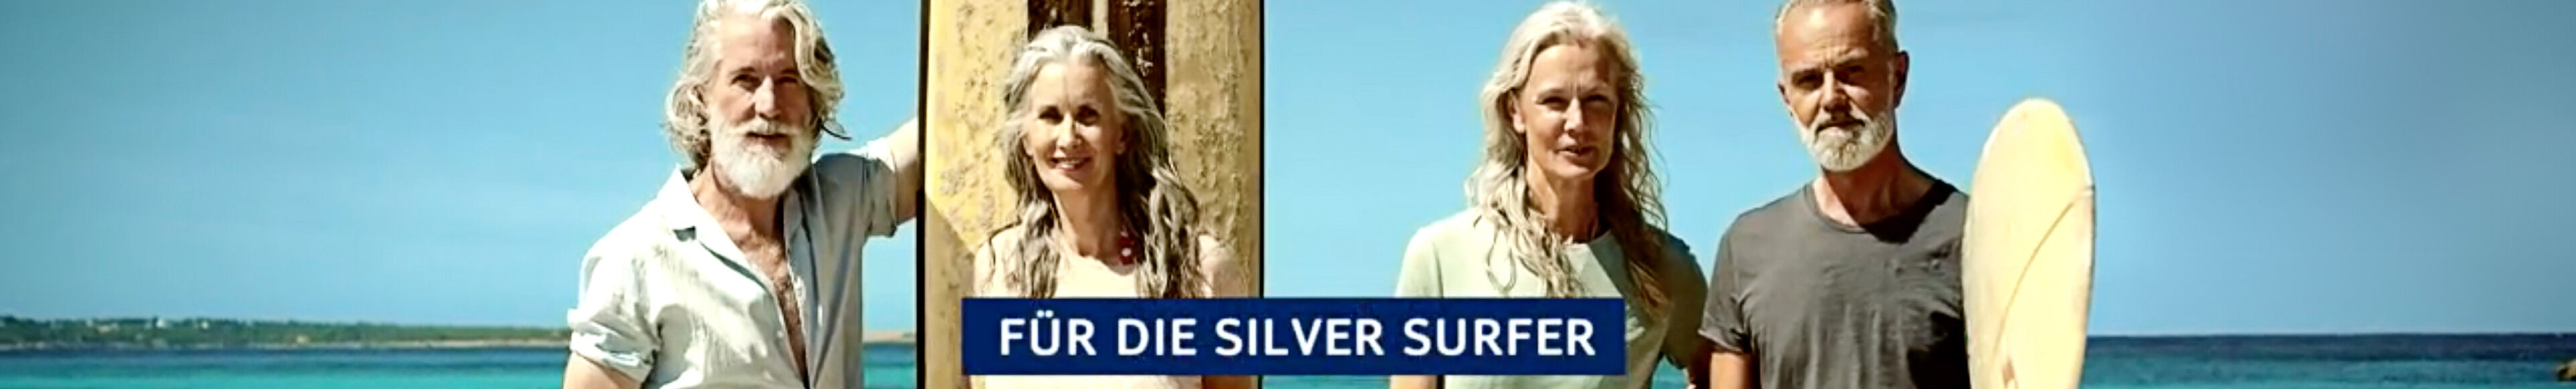 tui-silversurfer-header